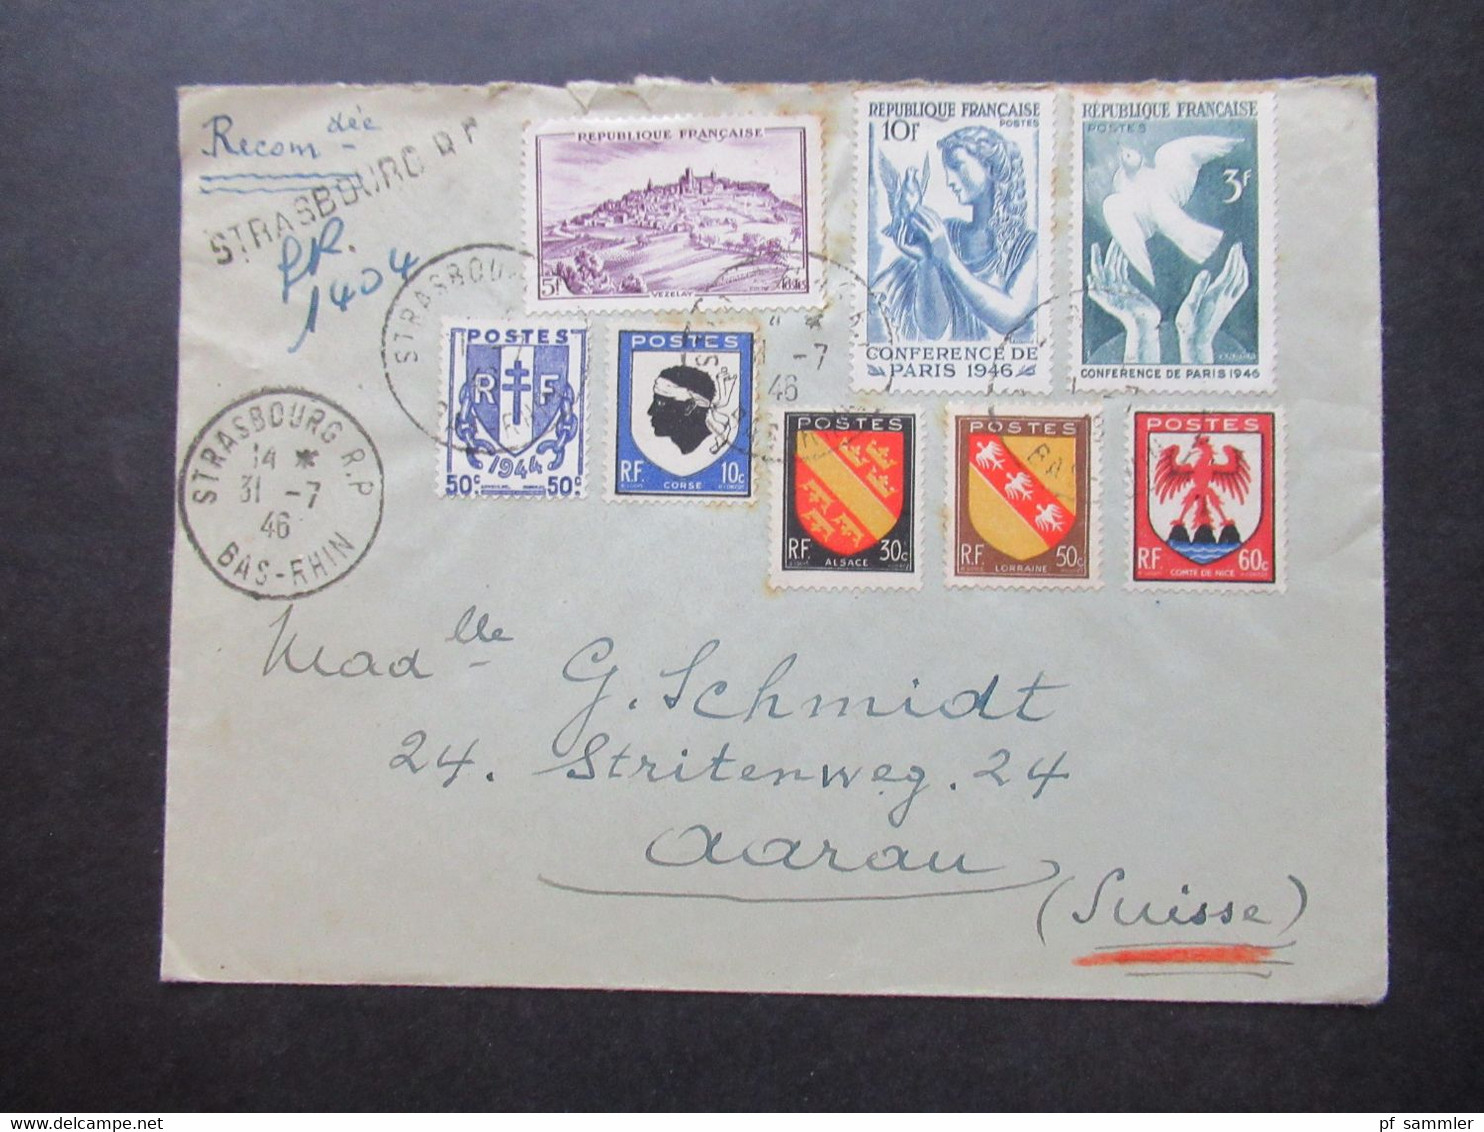 Frankreich 1946 MiF Einschreiben Reco Strasbourg R.P. Nach Aarau Schweiz Mit Ank. Stempel Aarau 1 Briefe - Briefe U. Dokumente